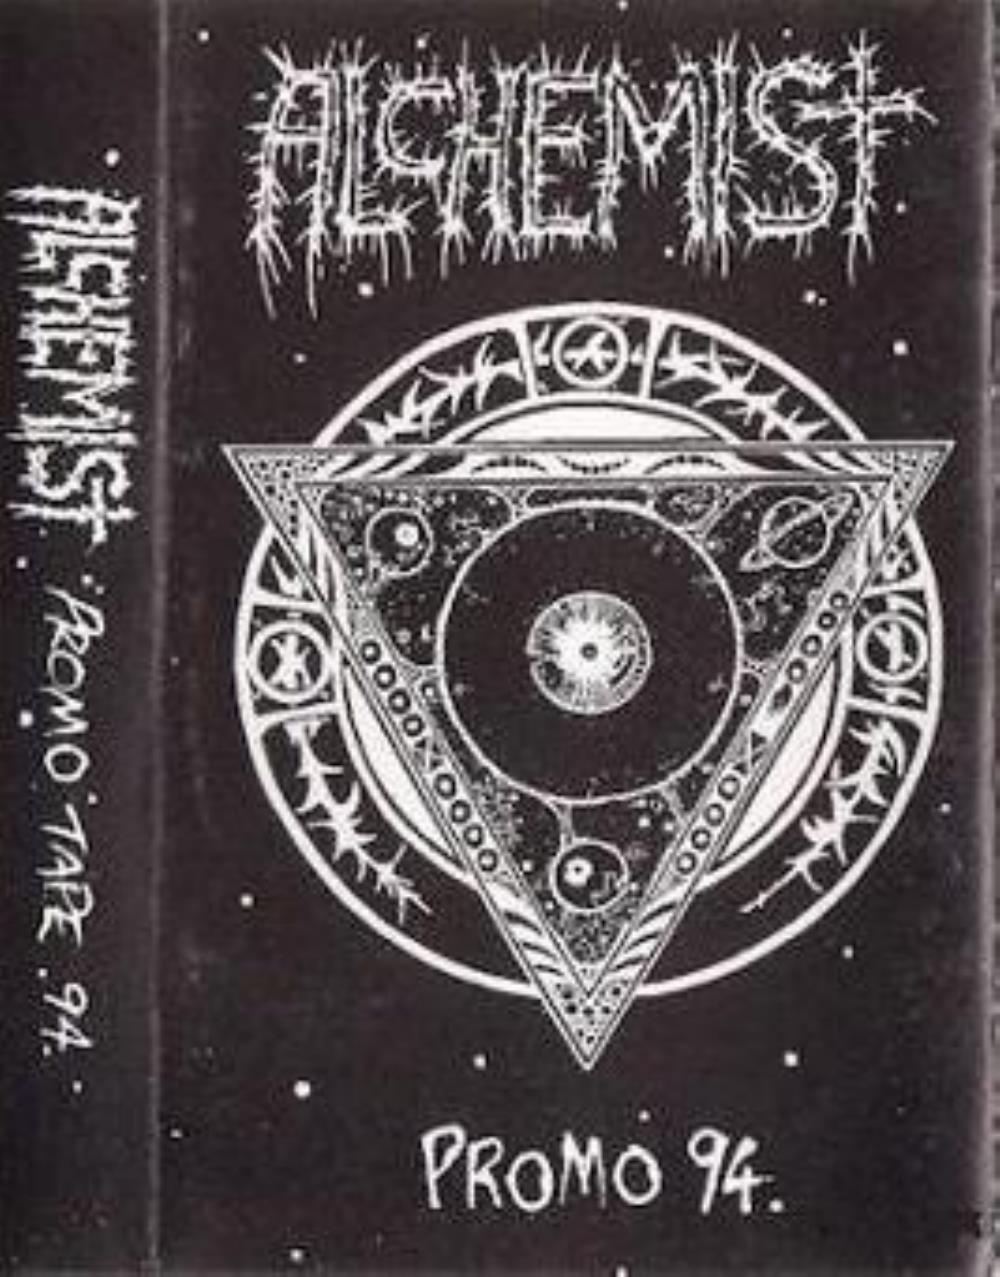 Alchemist Promo 94 album cover